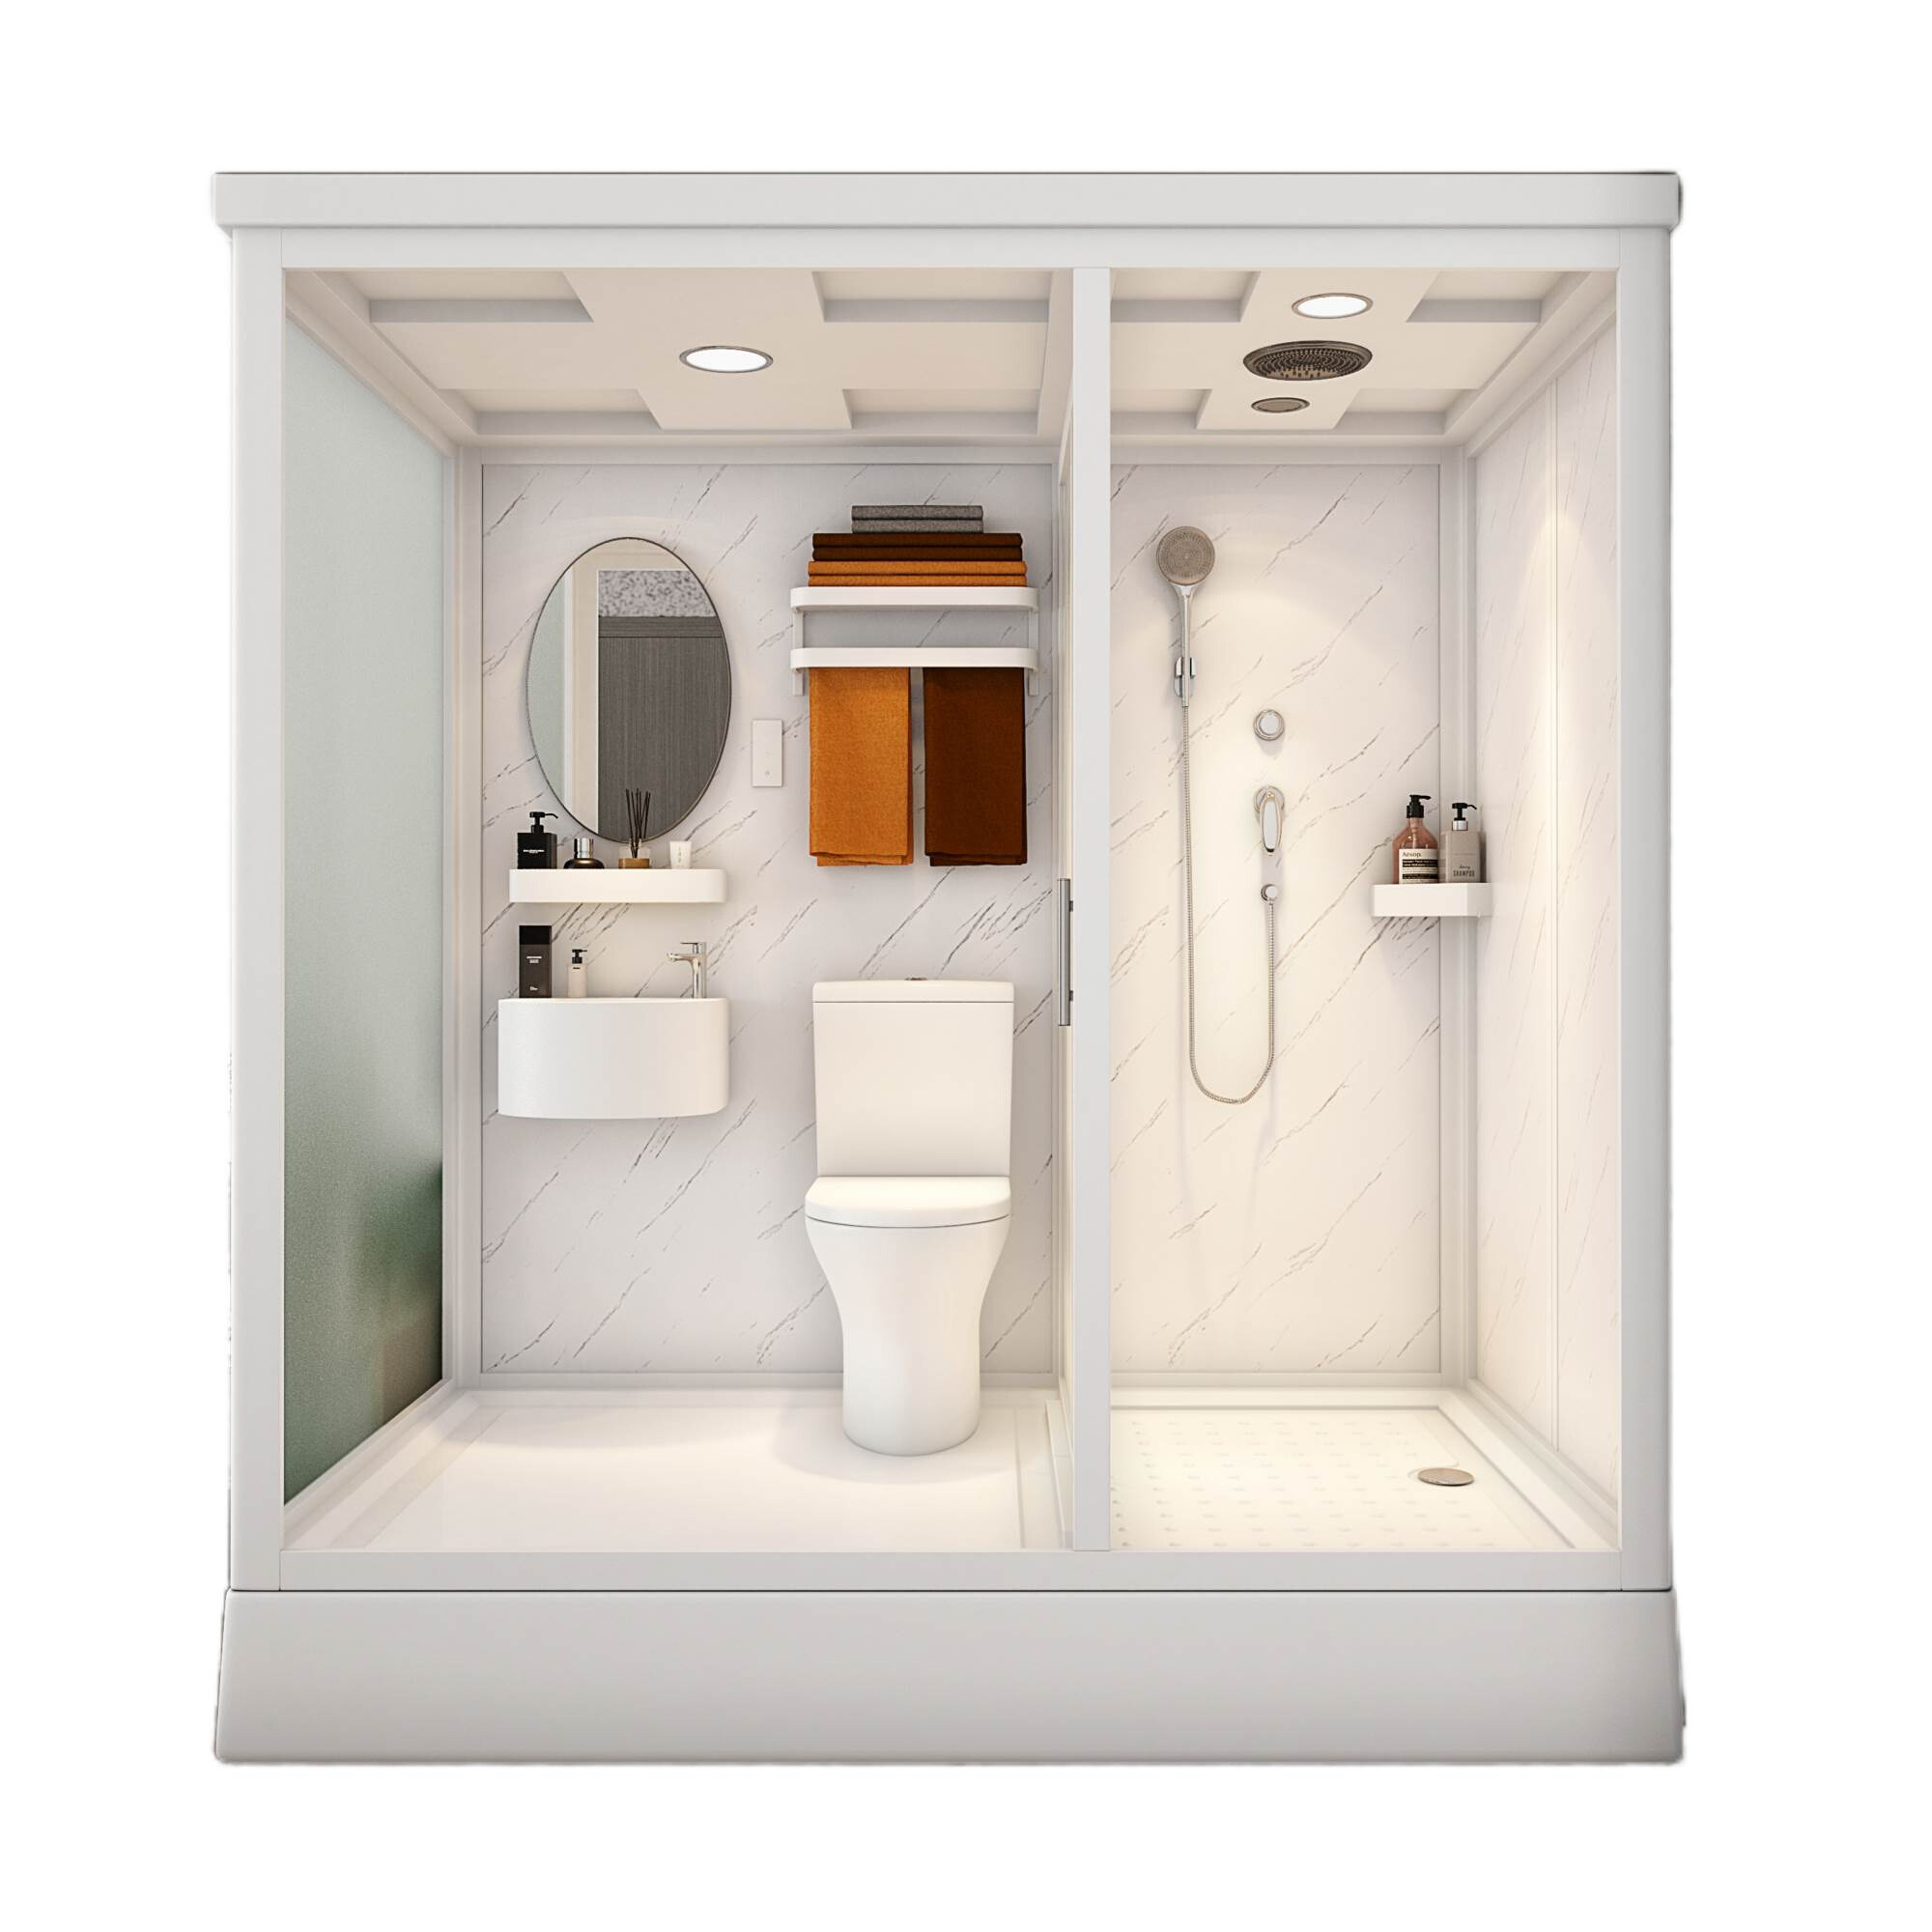 一体式 卫生间 整体淋浴房家用厕所玻璃隔断农村洗澡间集成卫浴室